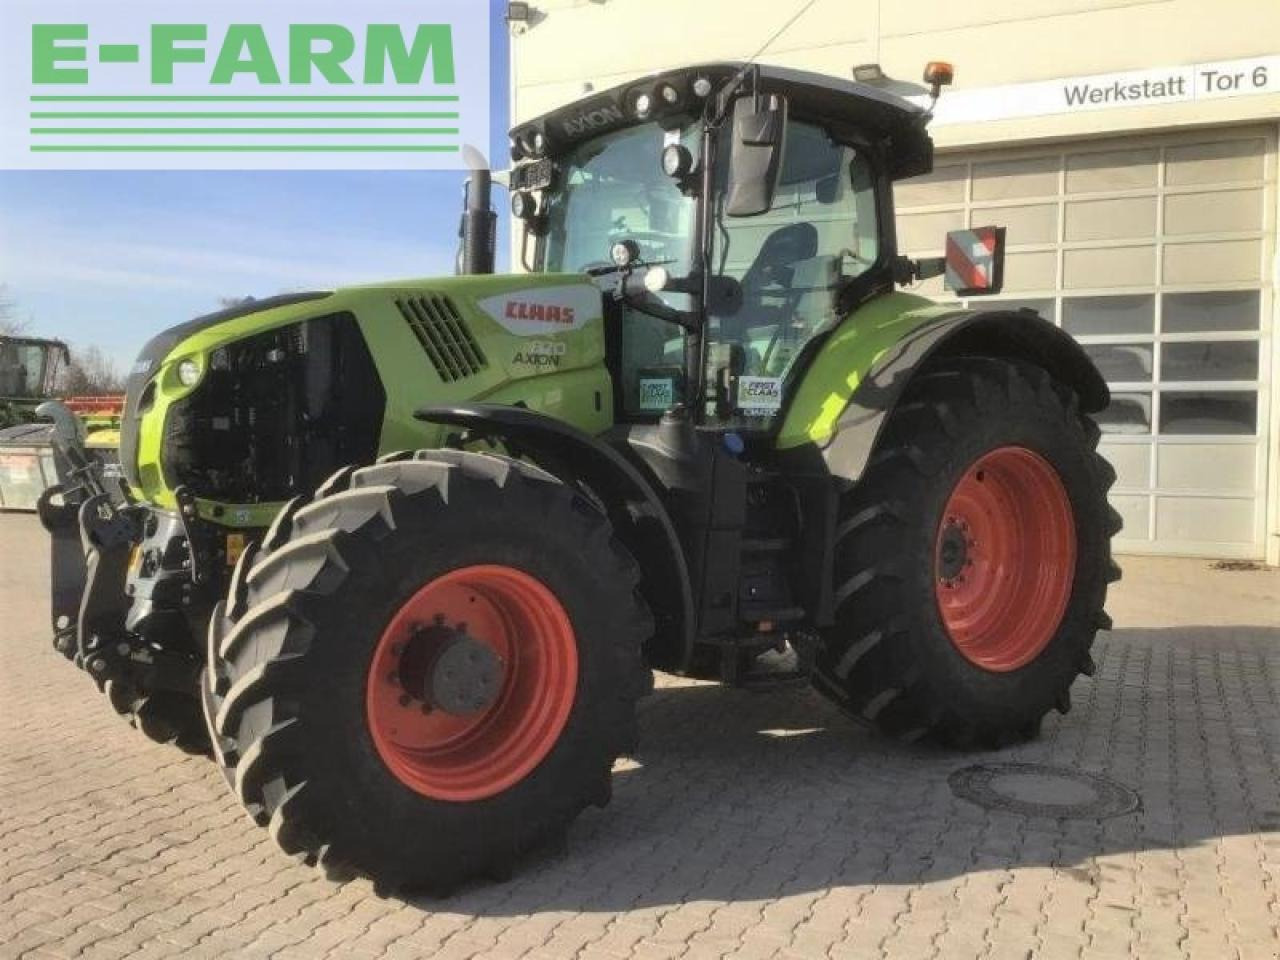 Farm tractor CLAAS axion 870 cmatic